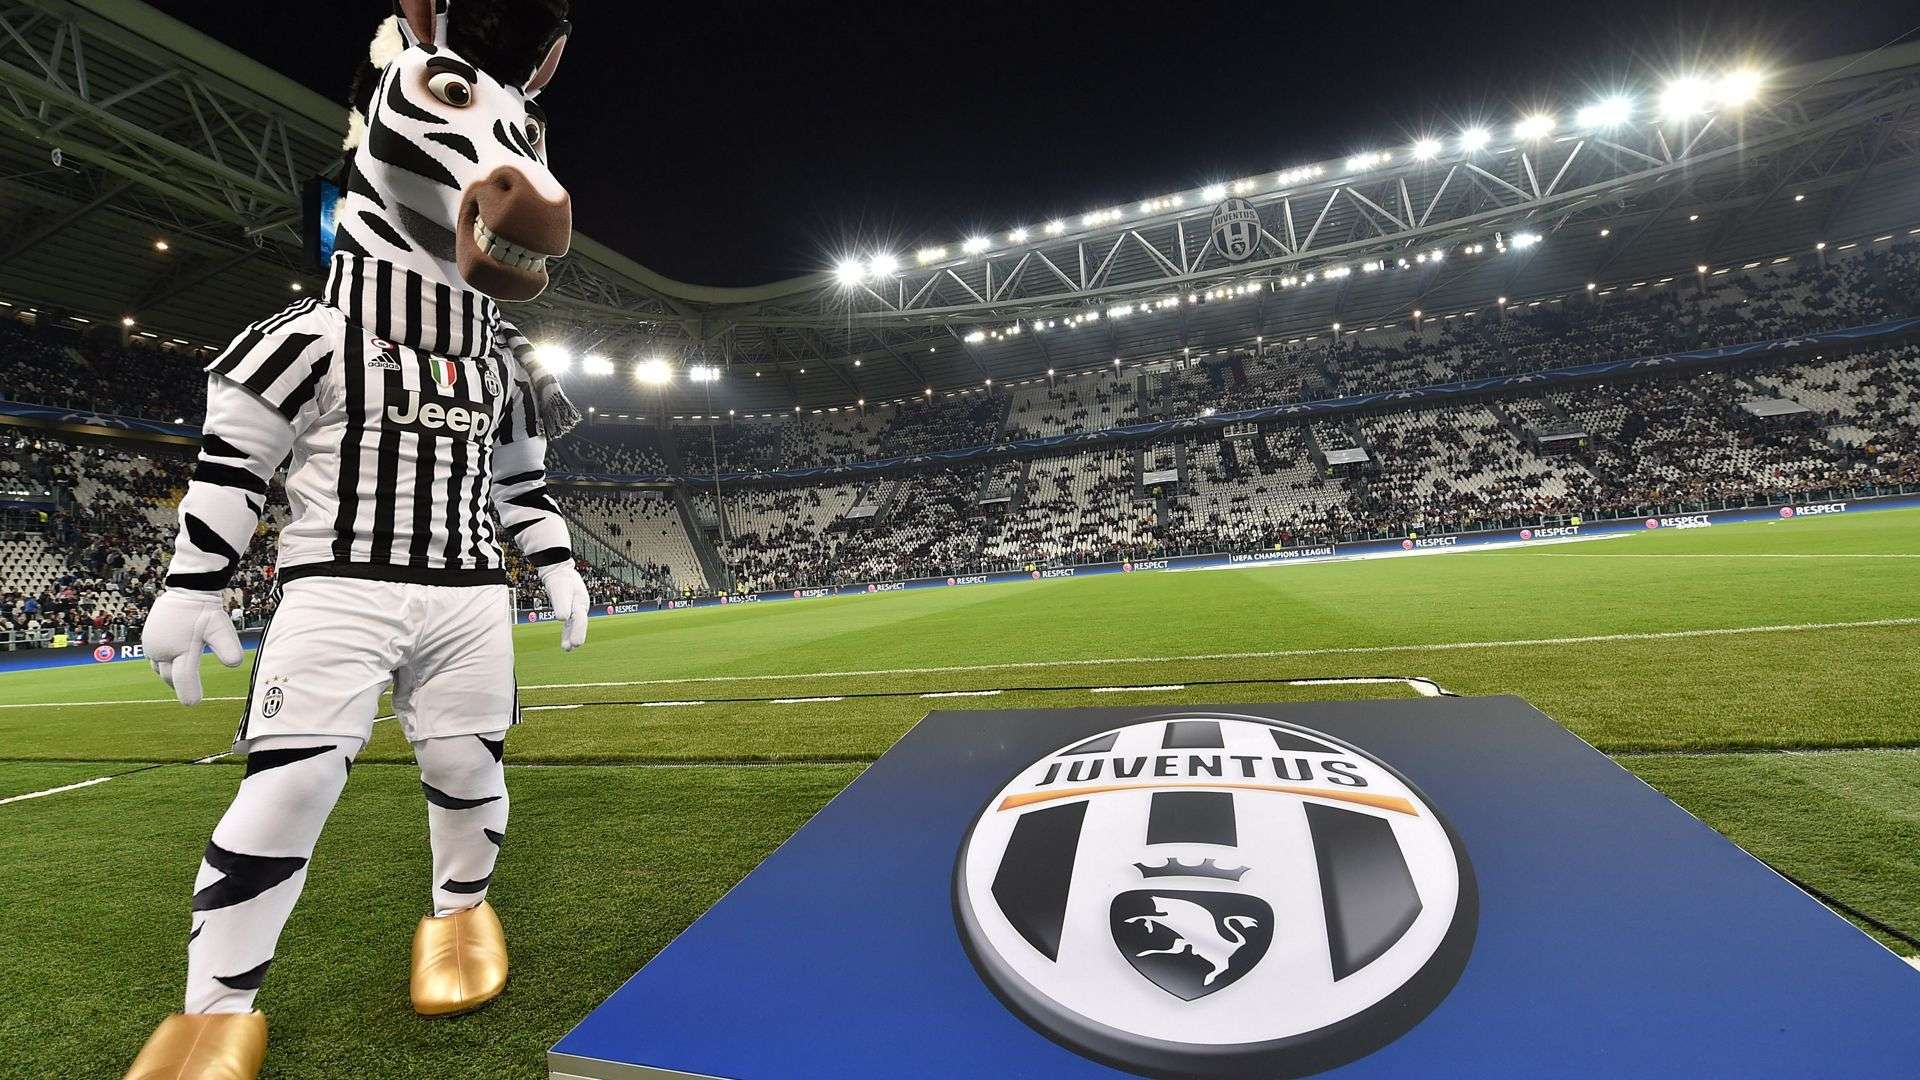 Juventus Stadium & Zebra mascot